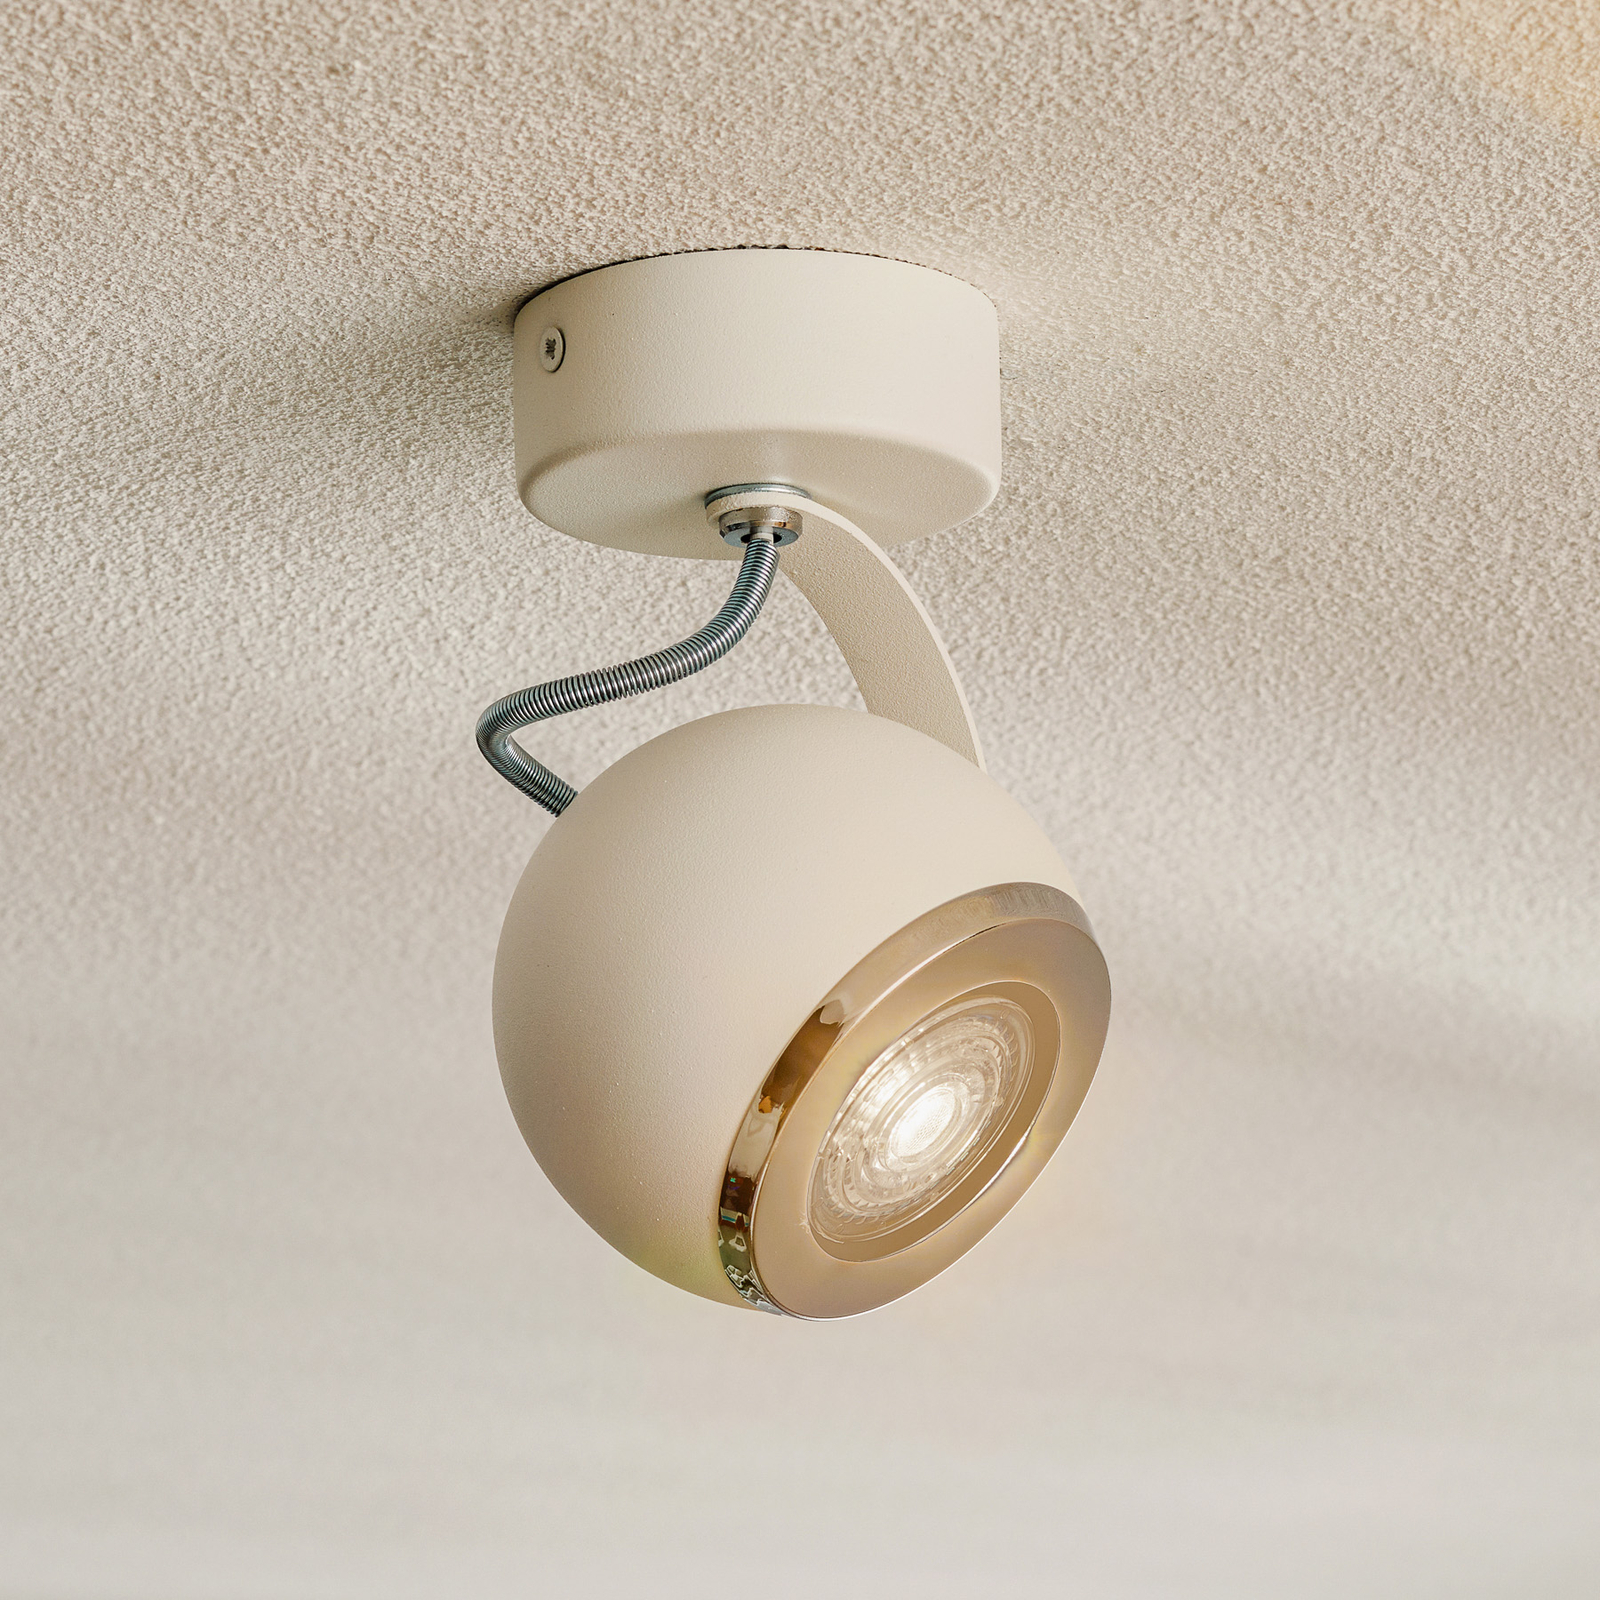 Kron ceiling spotlight, one-bulb, white